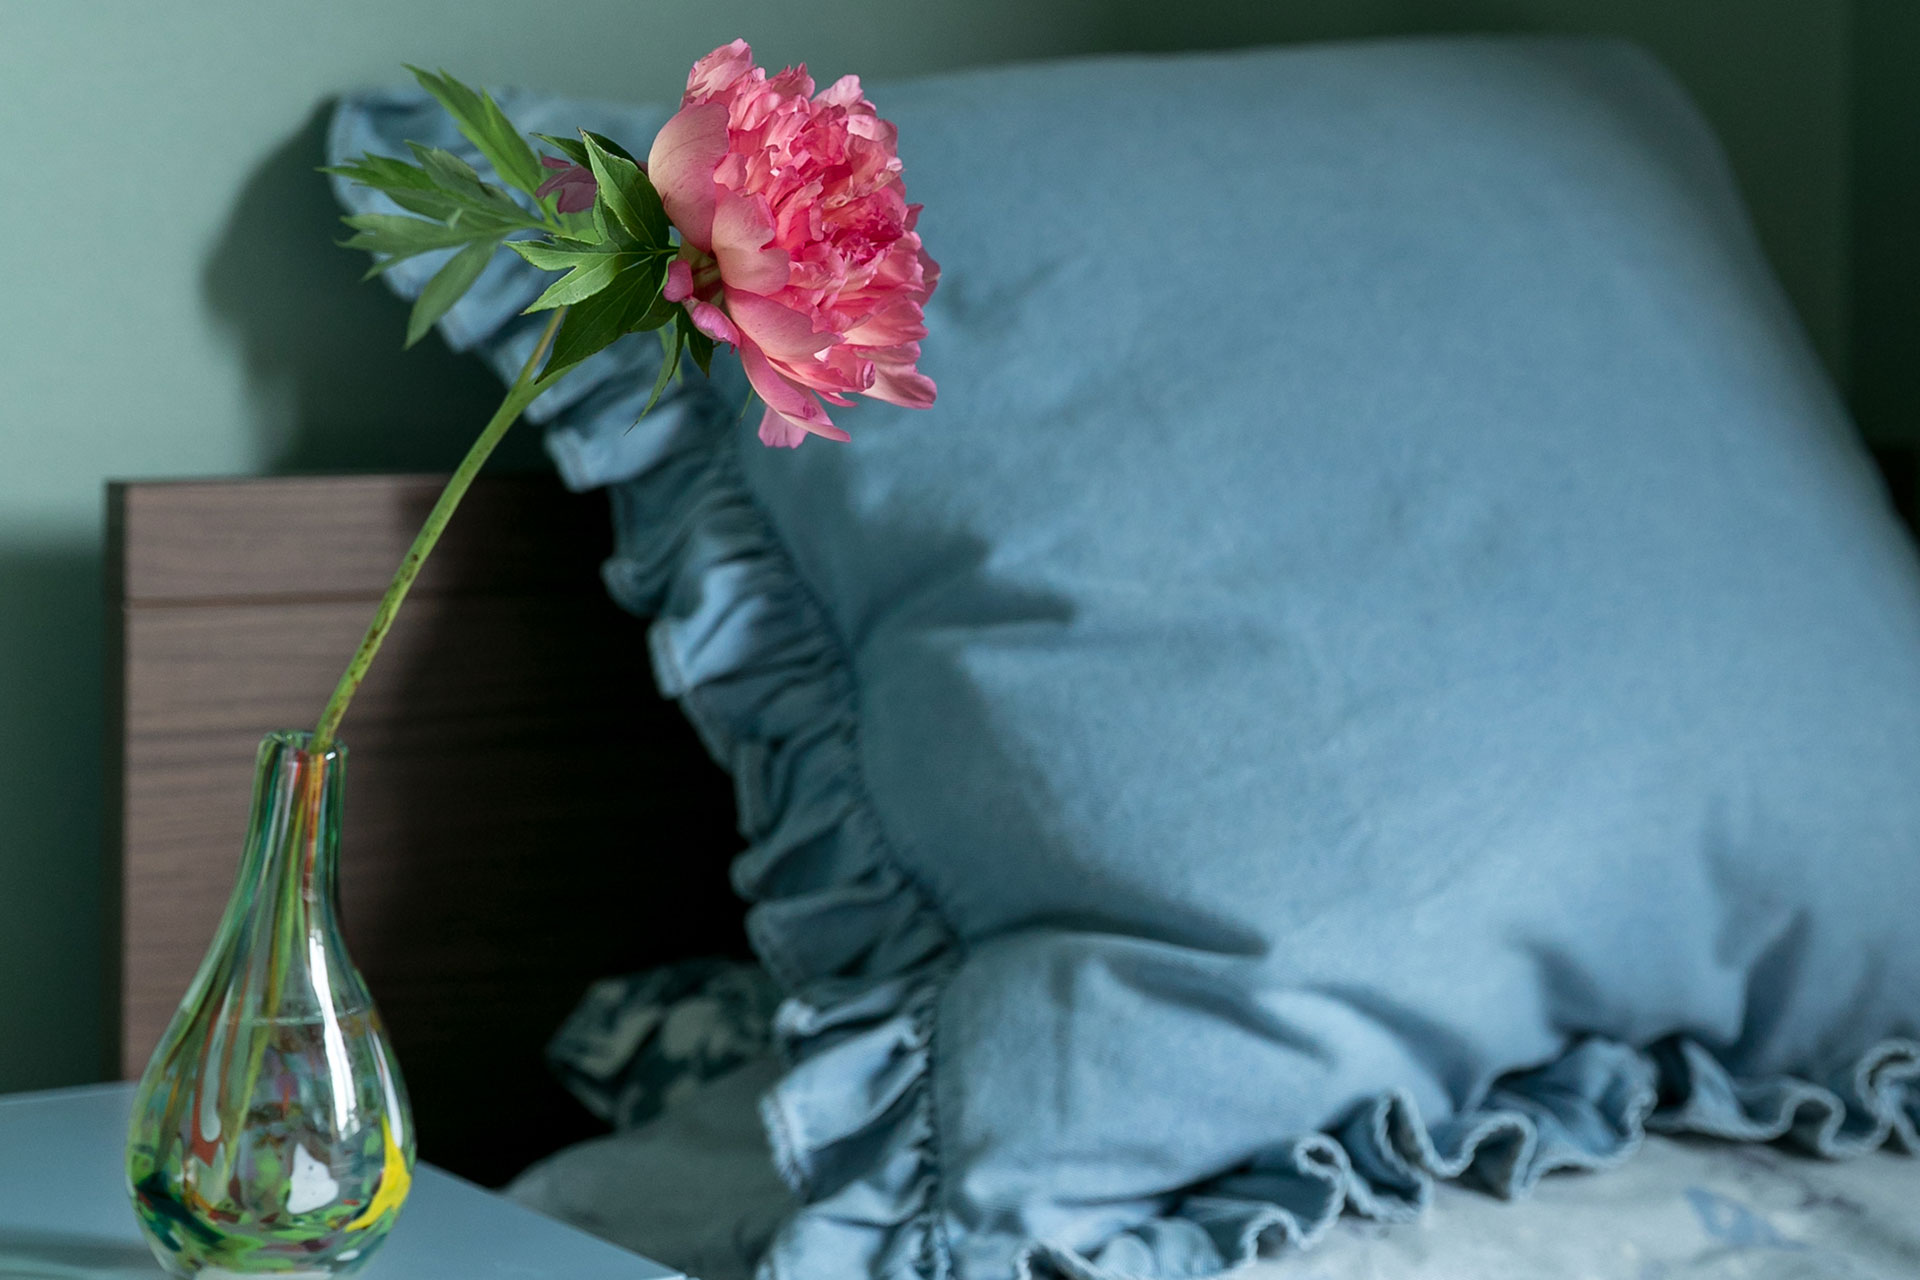 枕元に一輪の芍薬を飾る。花の香りに包まれて眠りにつく豊かな生活。